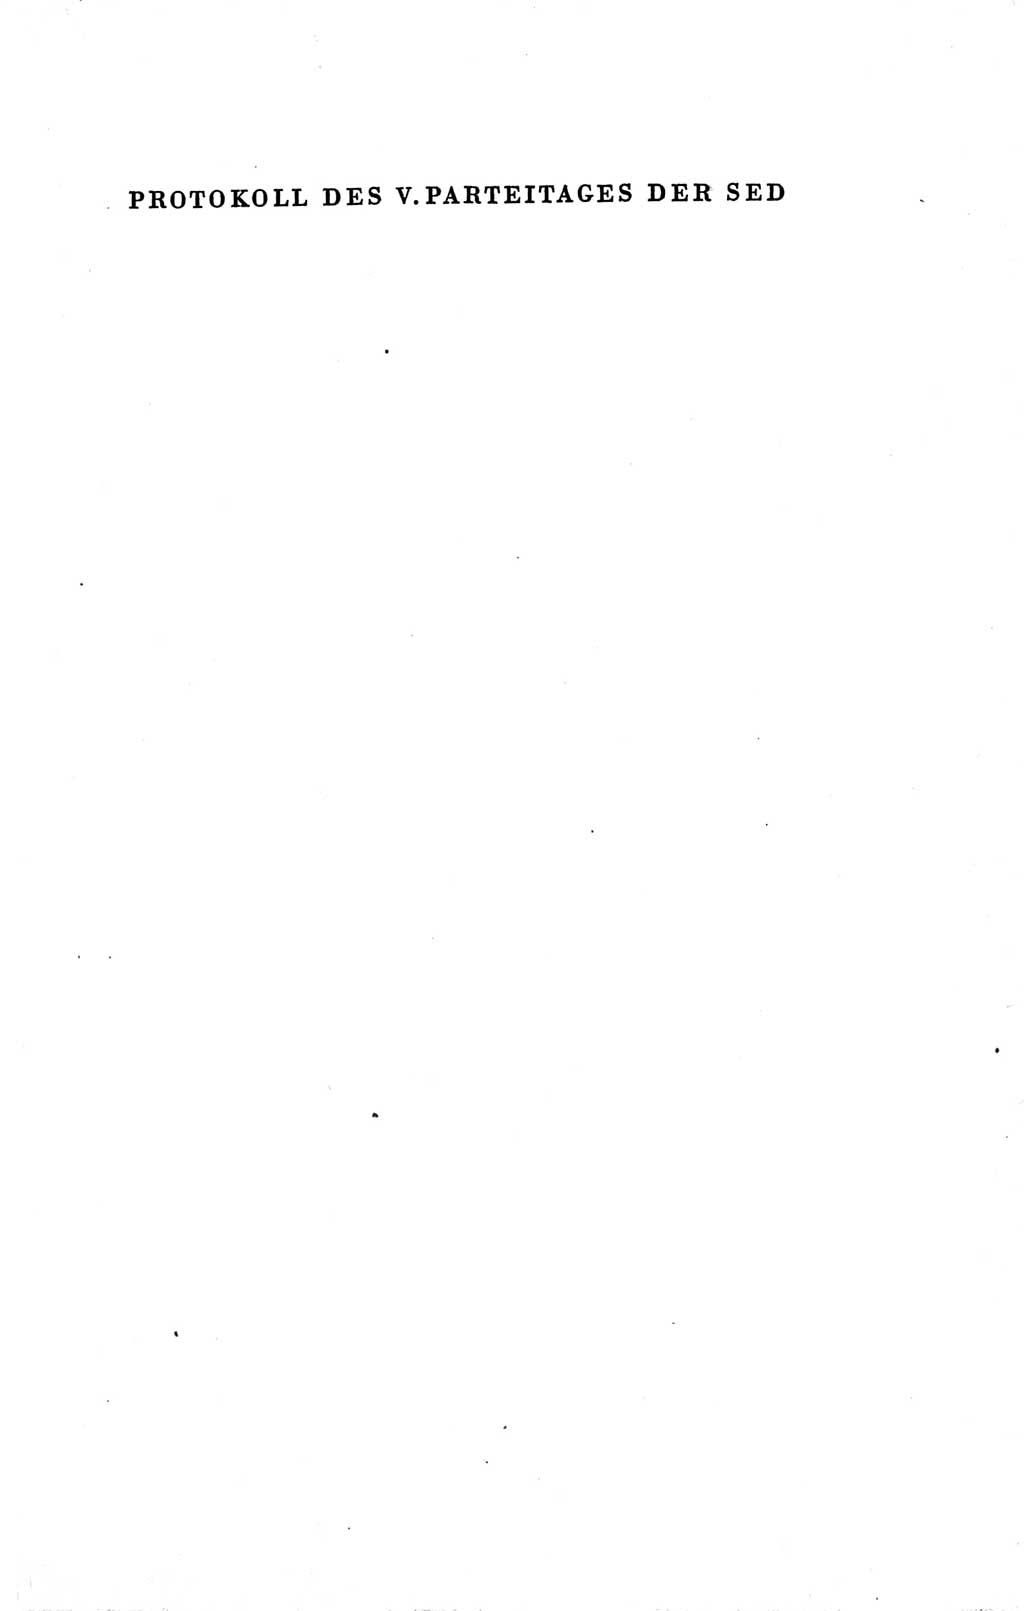 Protokoll der Verhandlungen des Ⅴ. Parteitages der Sozialistischen Einheitspartei Deutschlands (SED) [Deutsche Demokratische Republik (DDR)] 1958, Seite 877